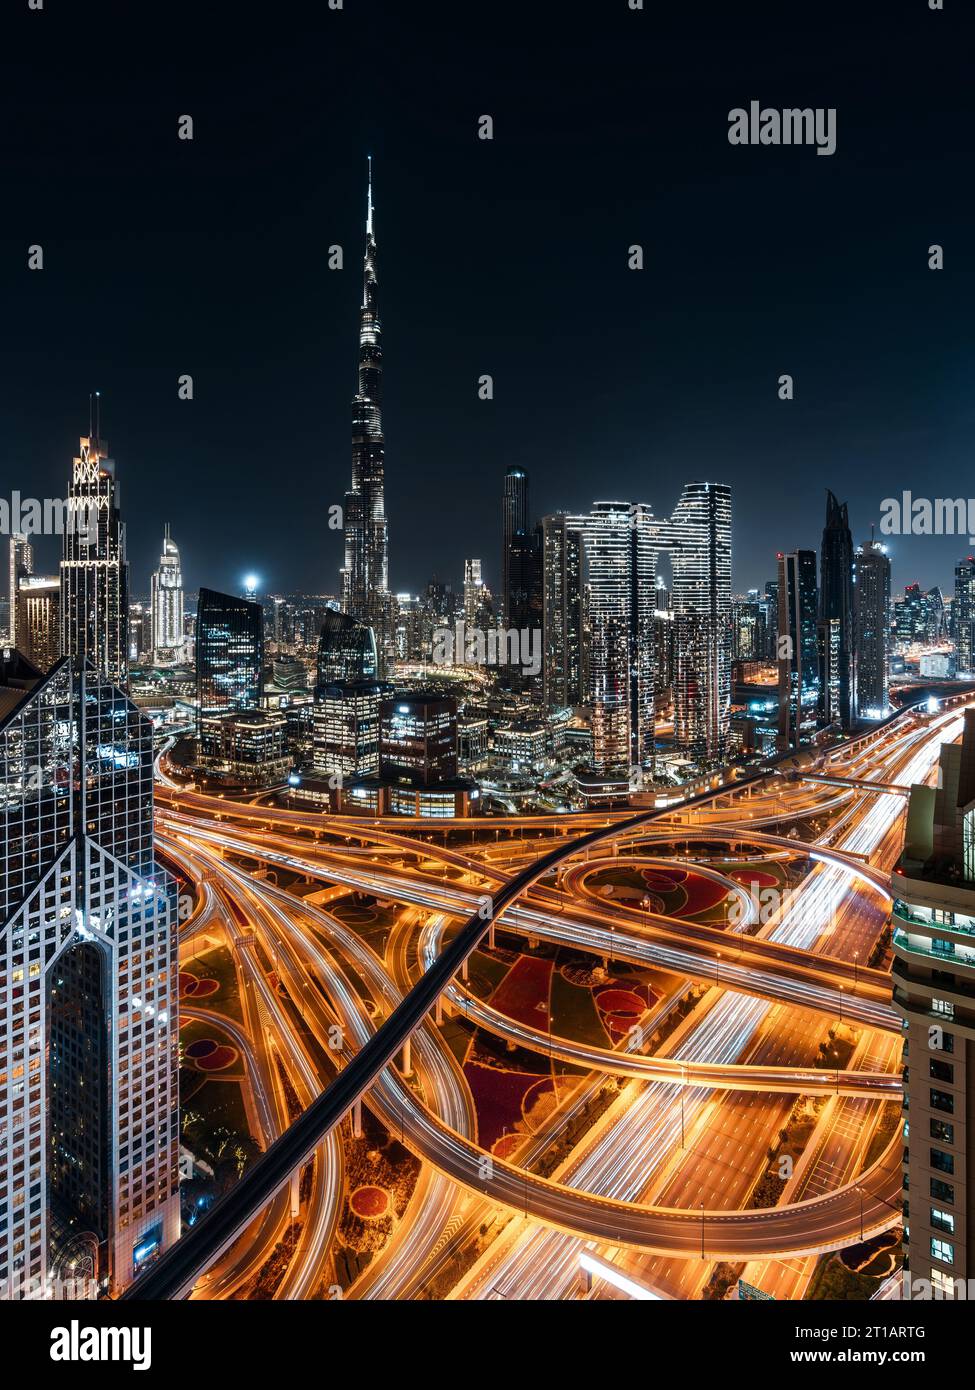 Dubai skyline with Burj Khalifa and Sheikh Zayed Road interchange, United Arab Emirates (UAE). Stock Photo